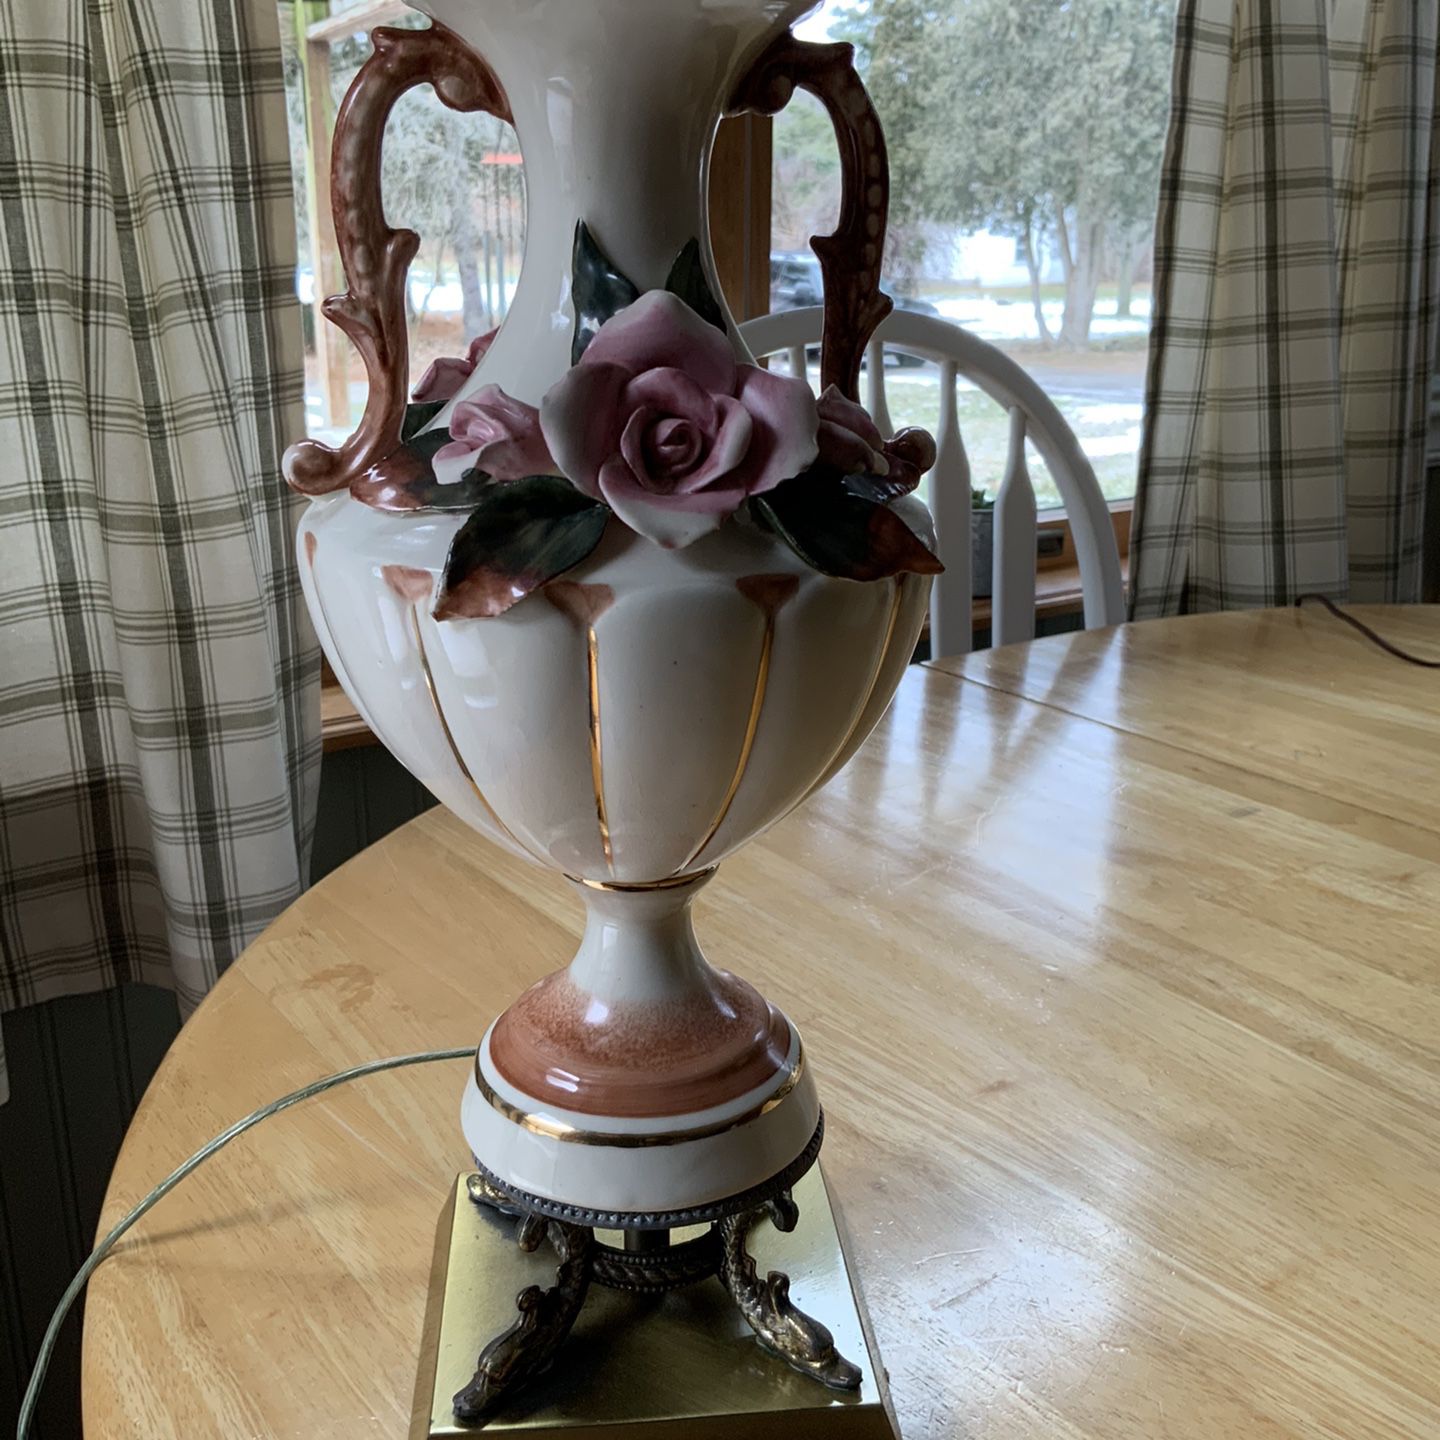 1947 Antique Rose Lamp $50.00 